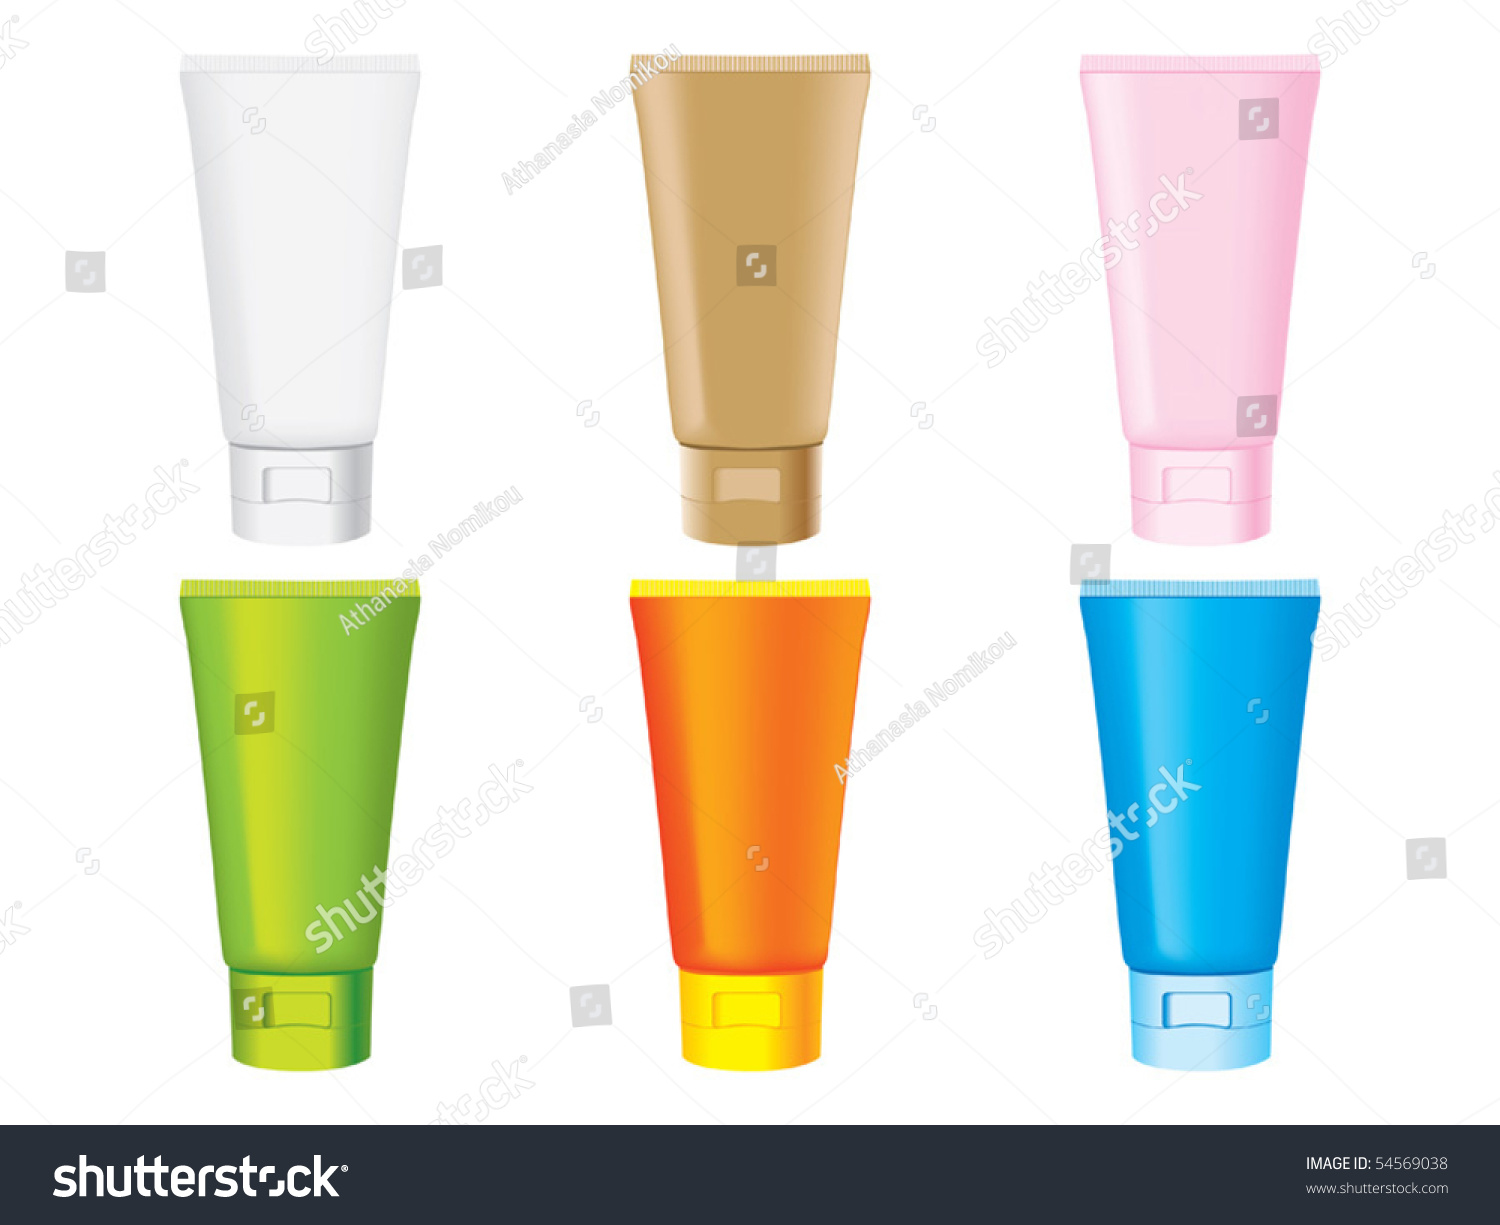 Plastic Bottles Vector - 54569038 : Shutterstock